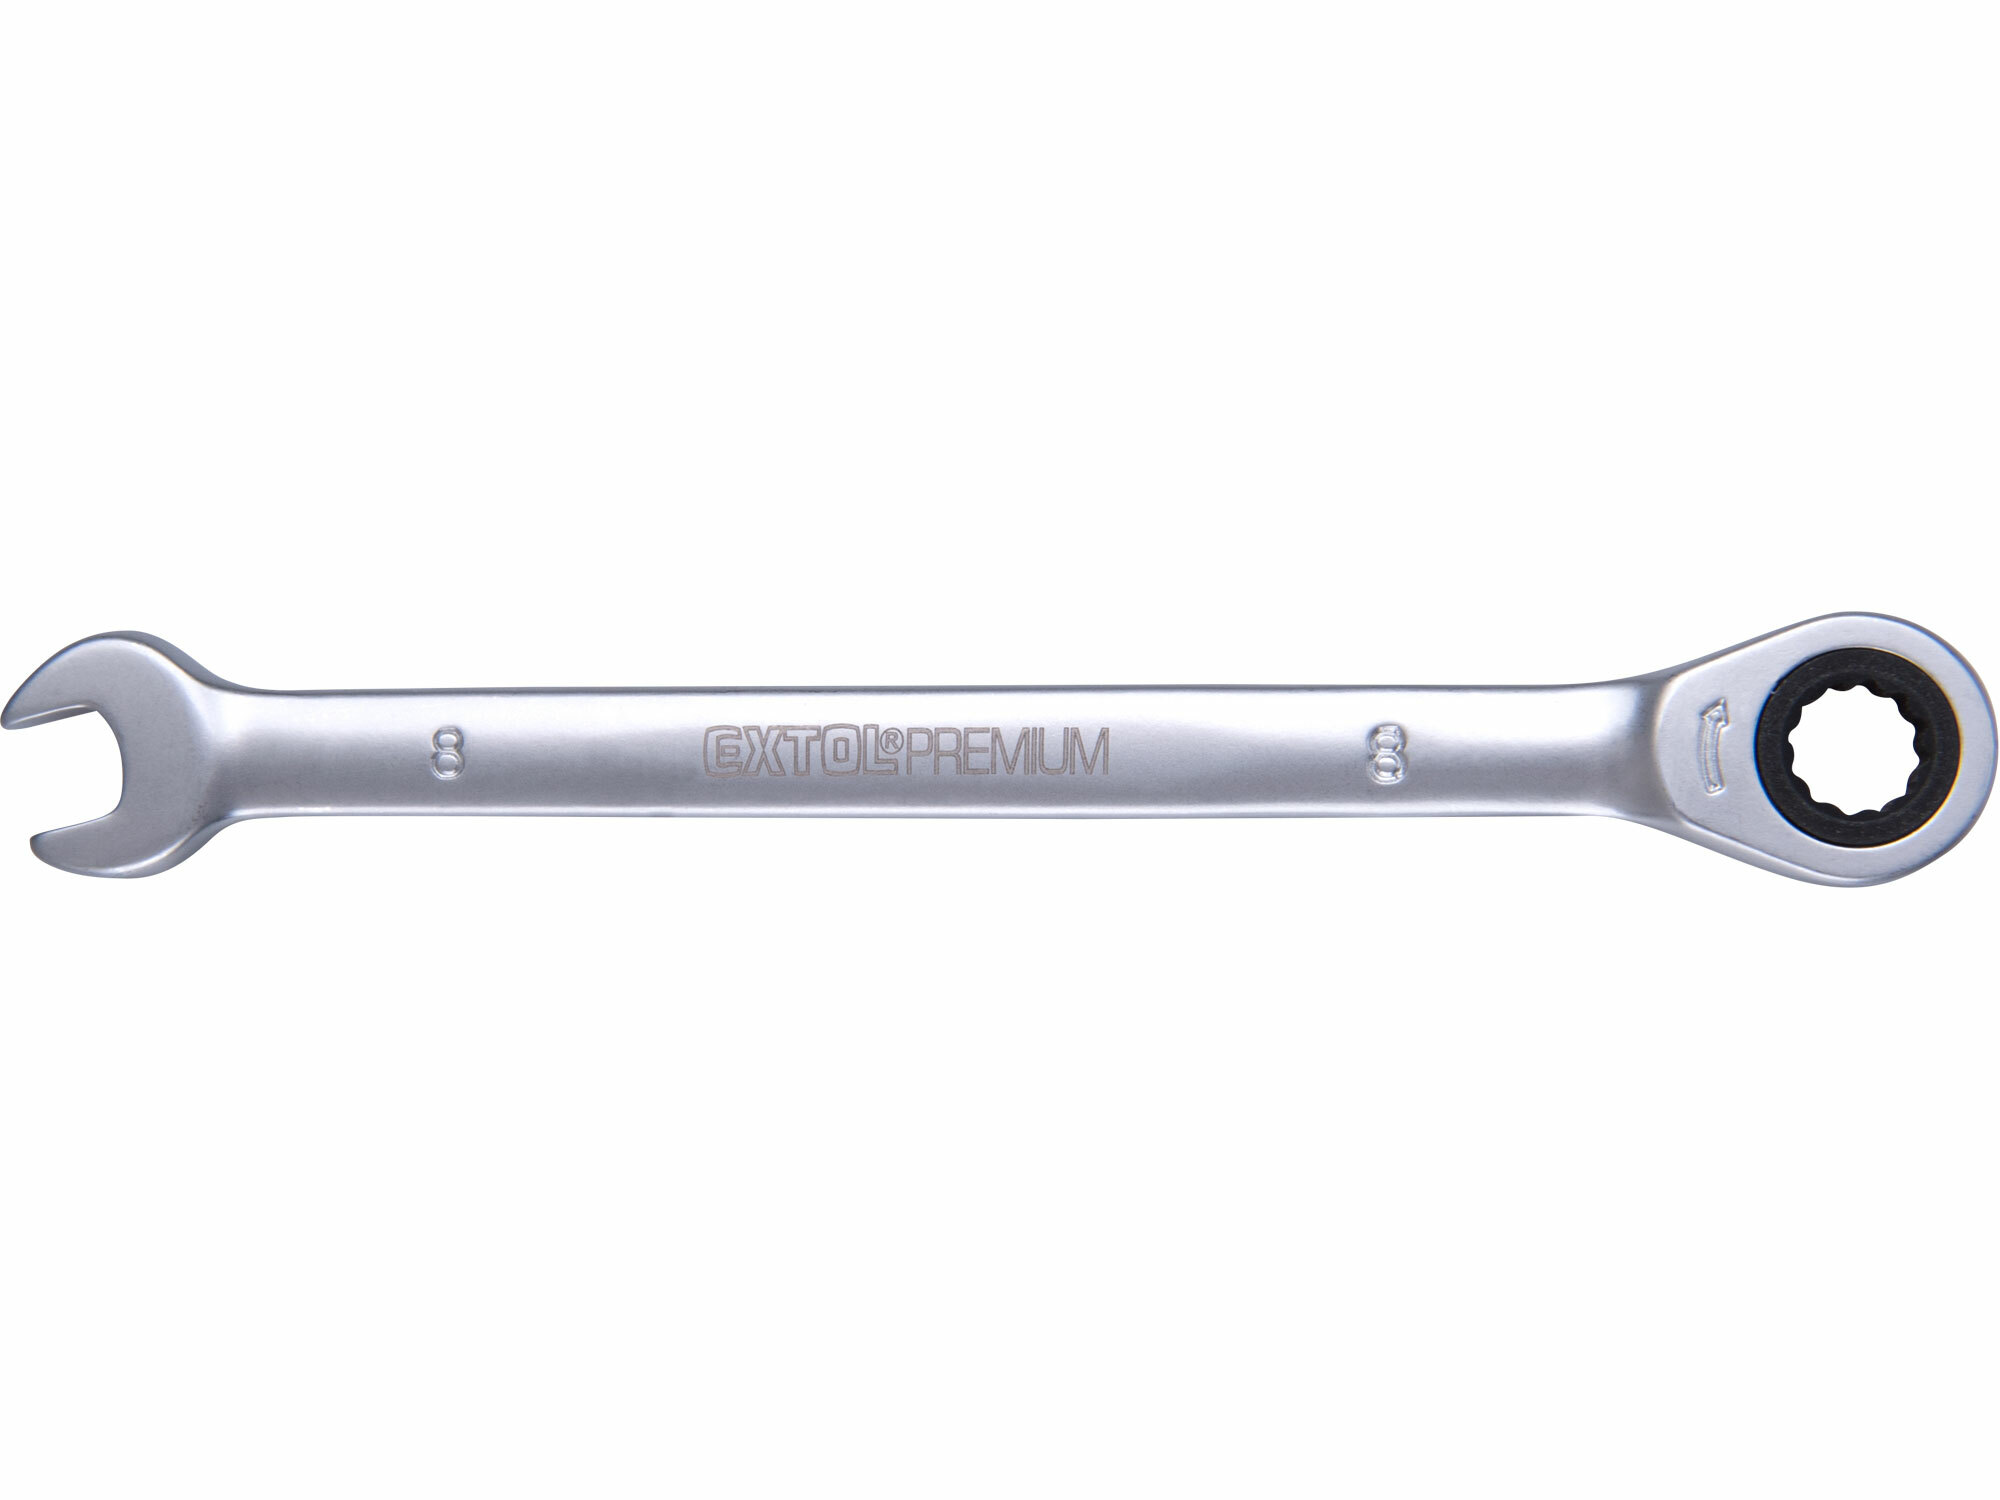 Kľúč očko-vidlicový, račňový, 72 zubov, 8mm, EXTOL PREMIUM